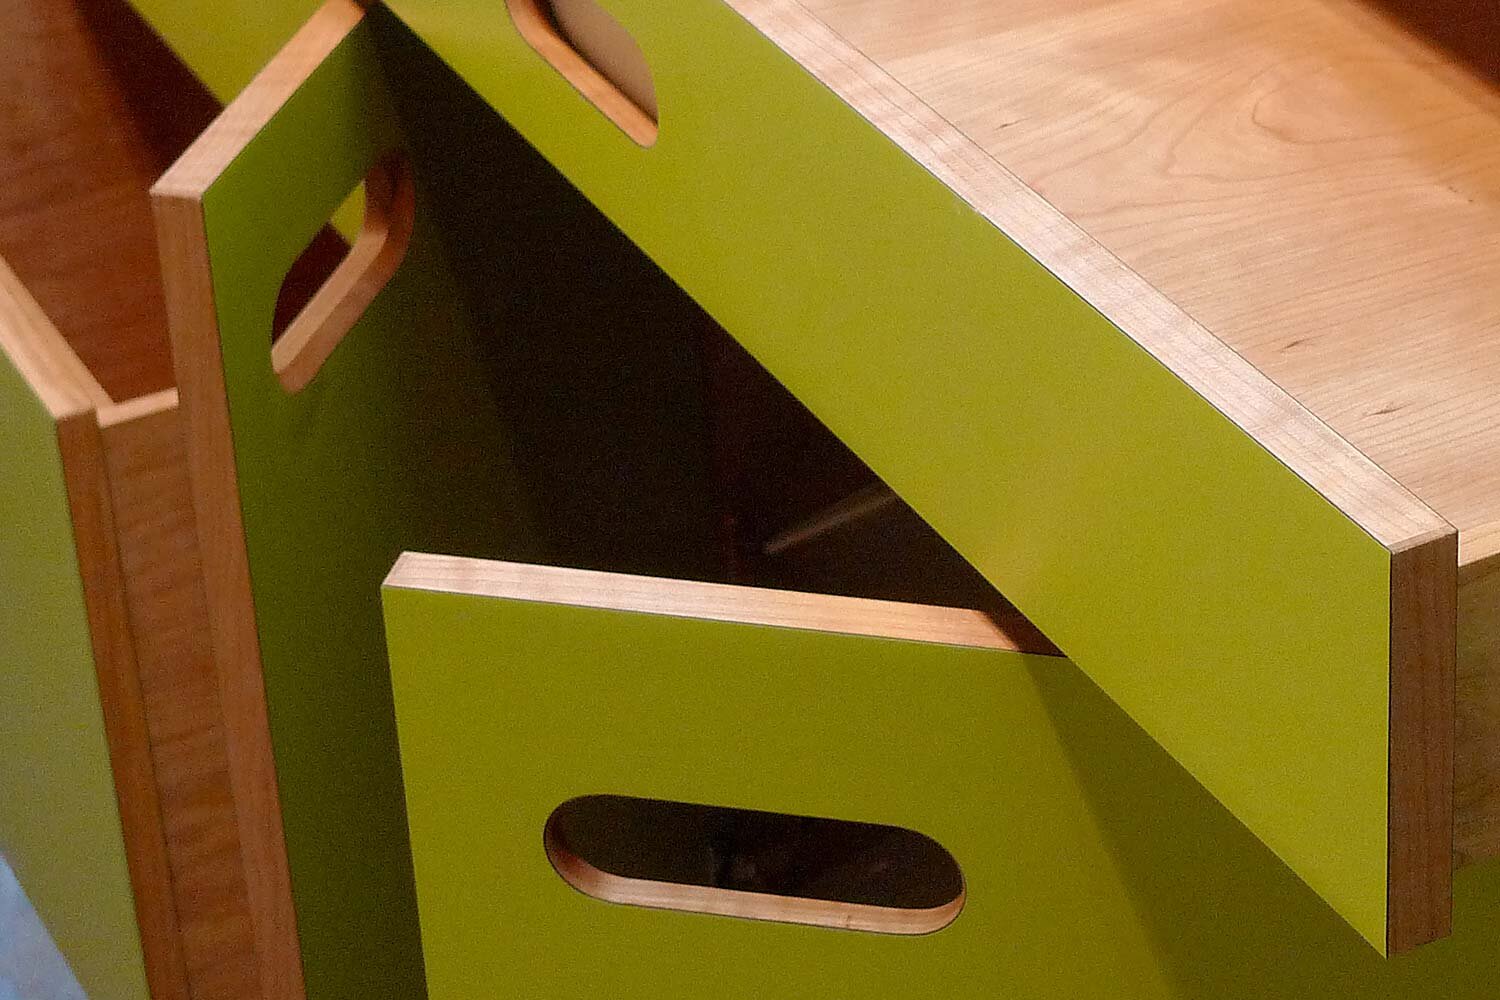 bespoke-sideboard-drawer-and-door-details.jpg